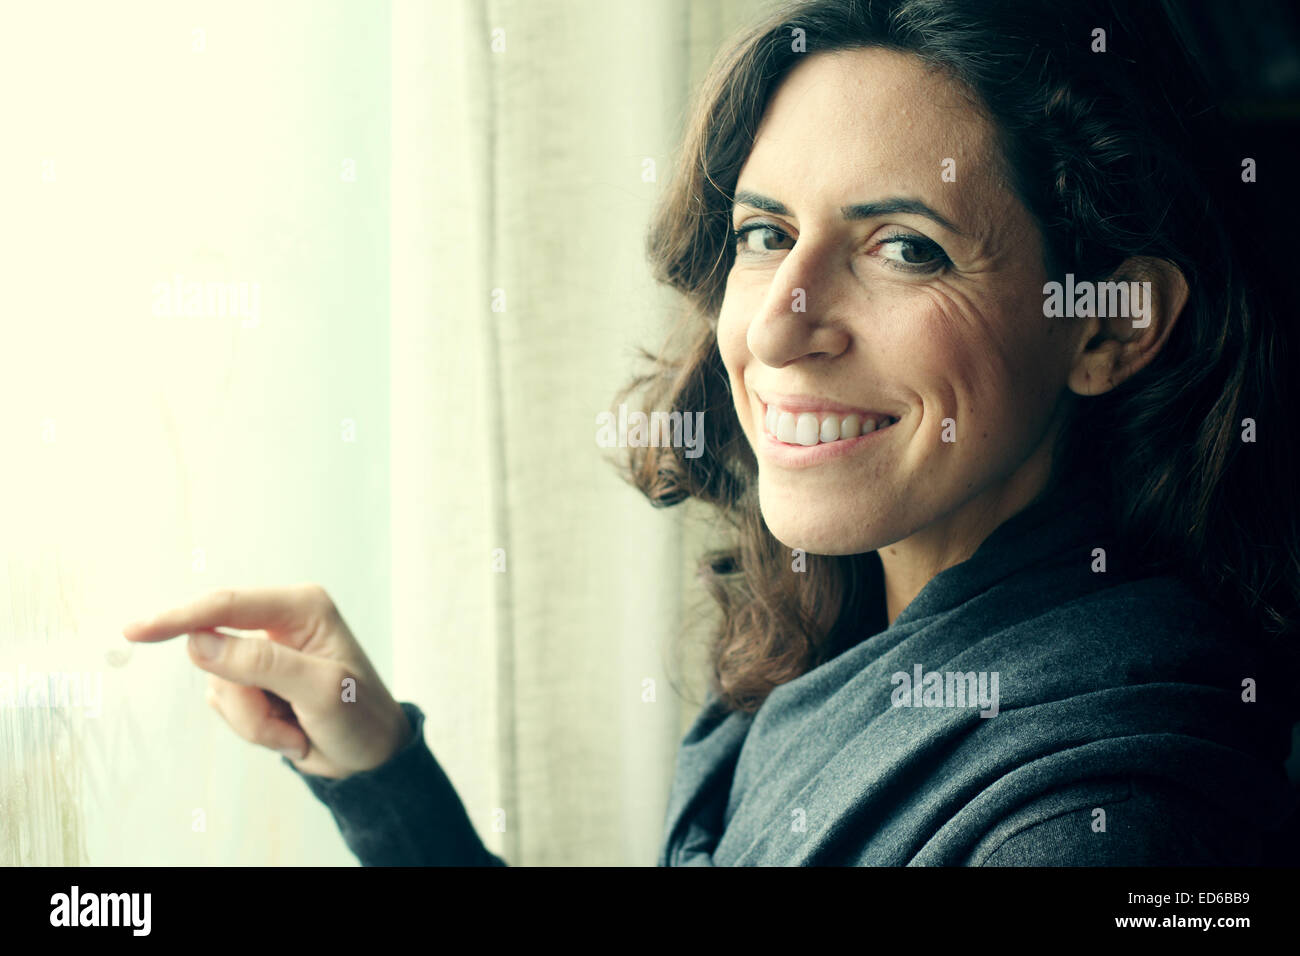 Beau Portrait de femme de 35 ans, debout près de la fenêtre Banque D'Images